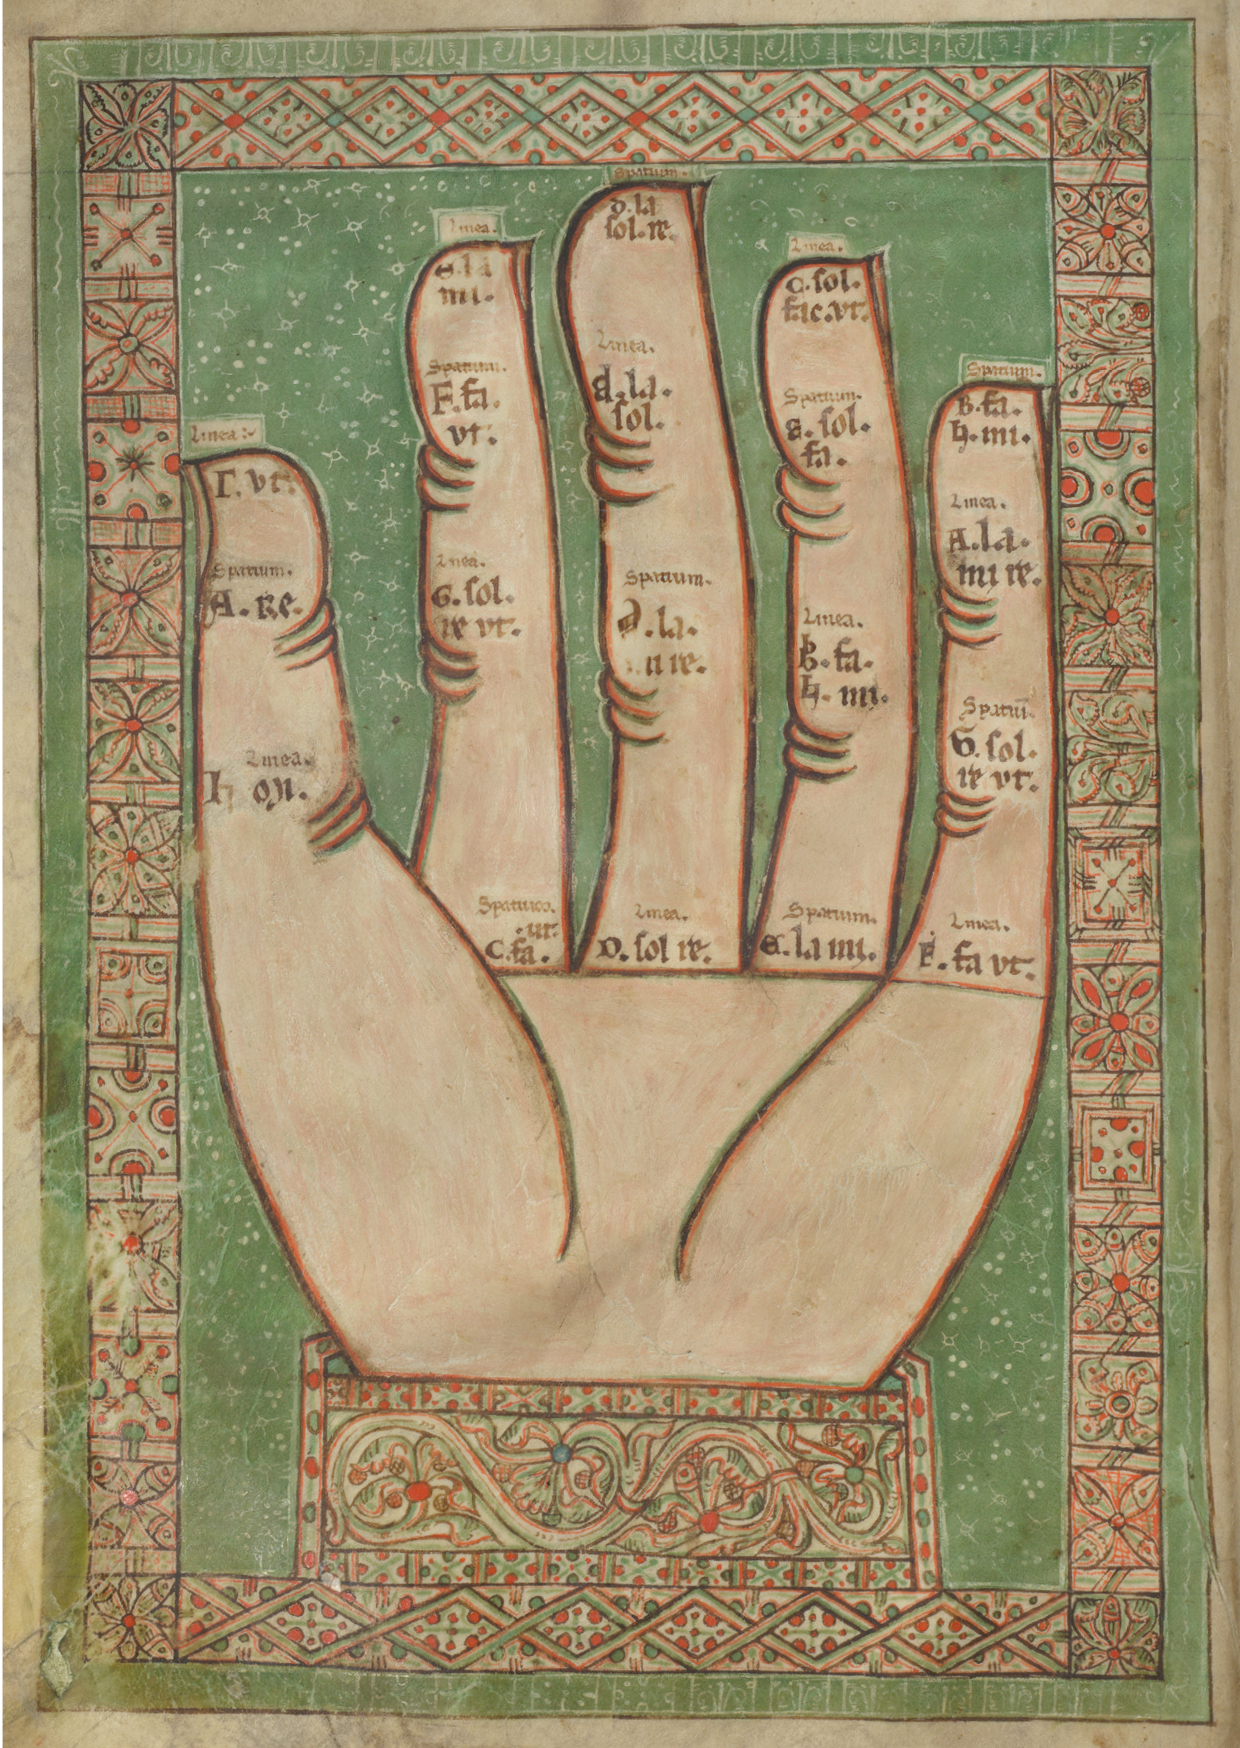 Auf dem Bild sieht man die offene Innenseite einer Hand. Über den Gelenken und an den Fingerspitzen steht immer ein kleiner Text. Der Hintergrund des Bildes ist grün und das gesamte Bild wird von einem verziertem Rahmen umrandet. 